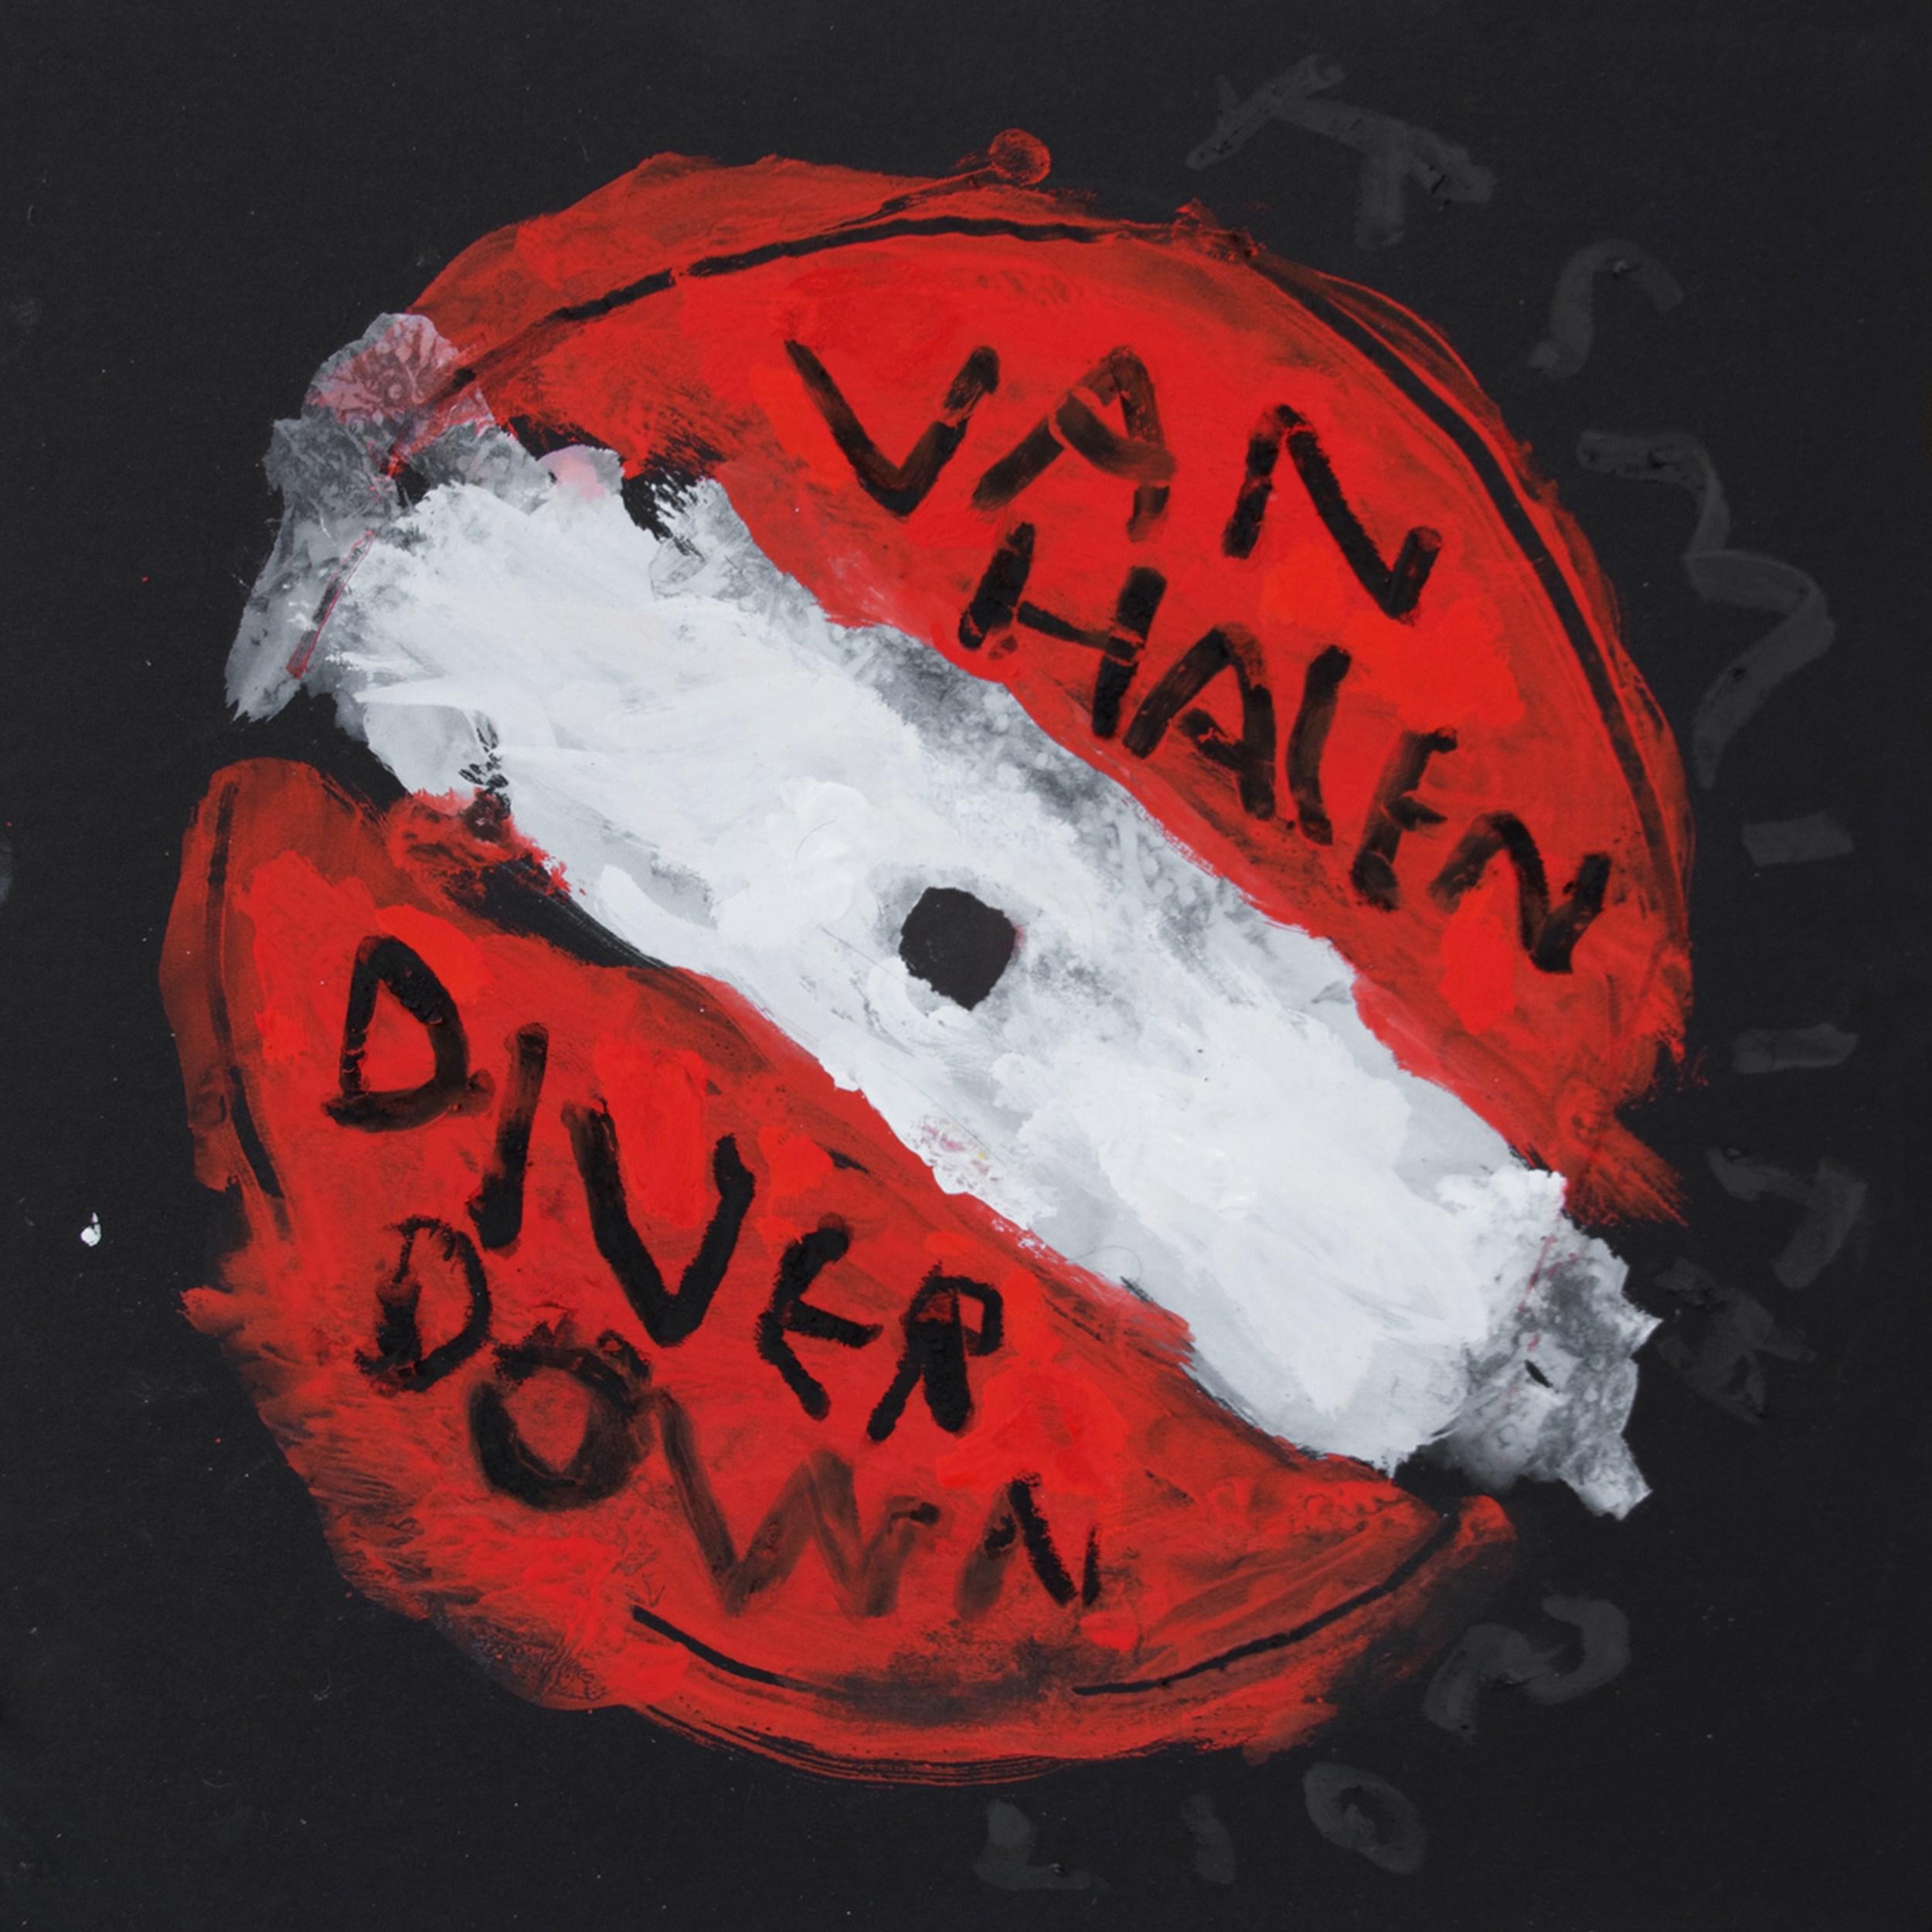 Van Halen - Diver Down (étiquette d'enregistrement, setlists, pop art contemporain)